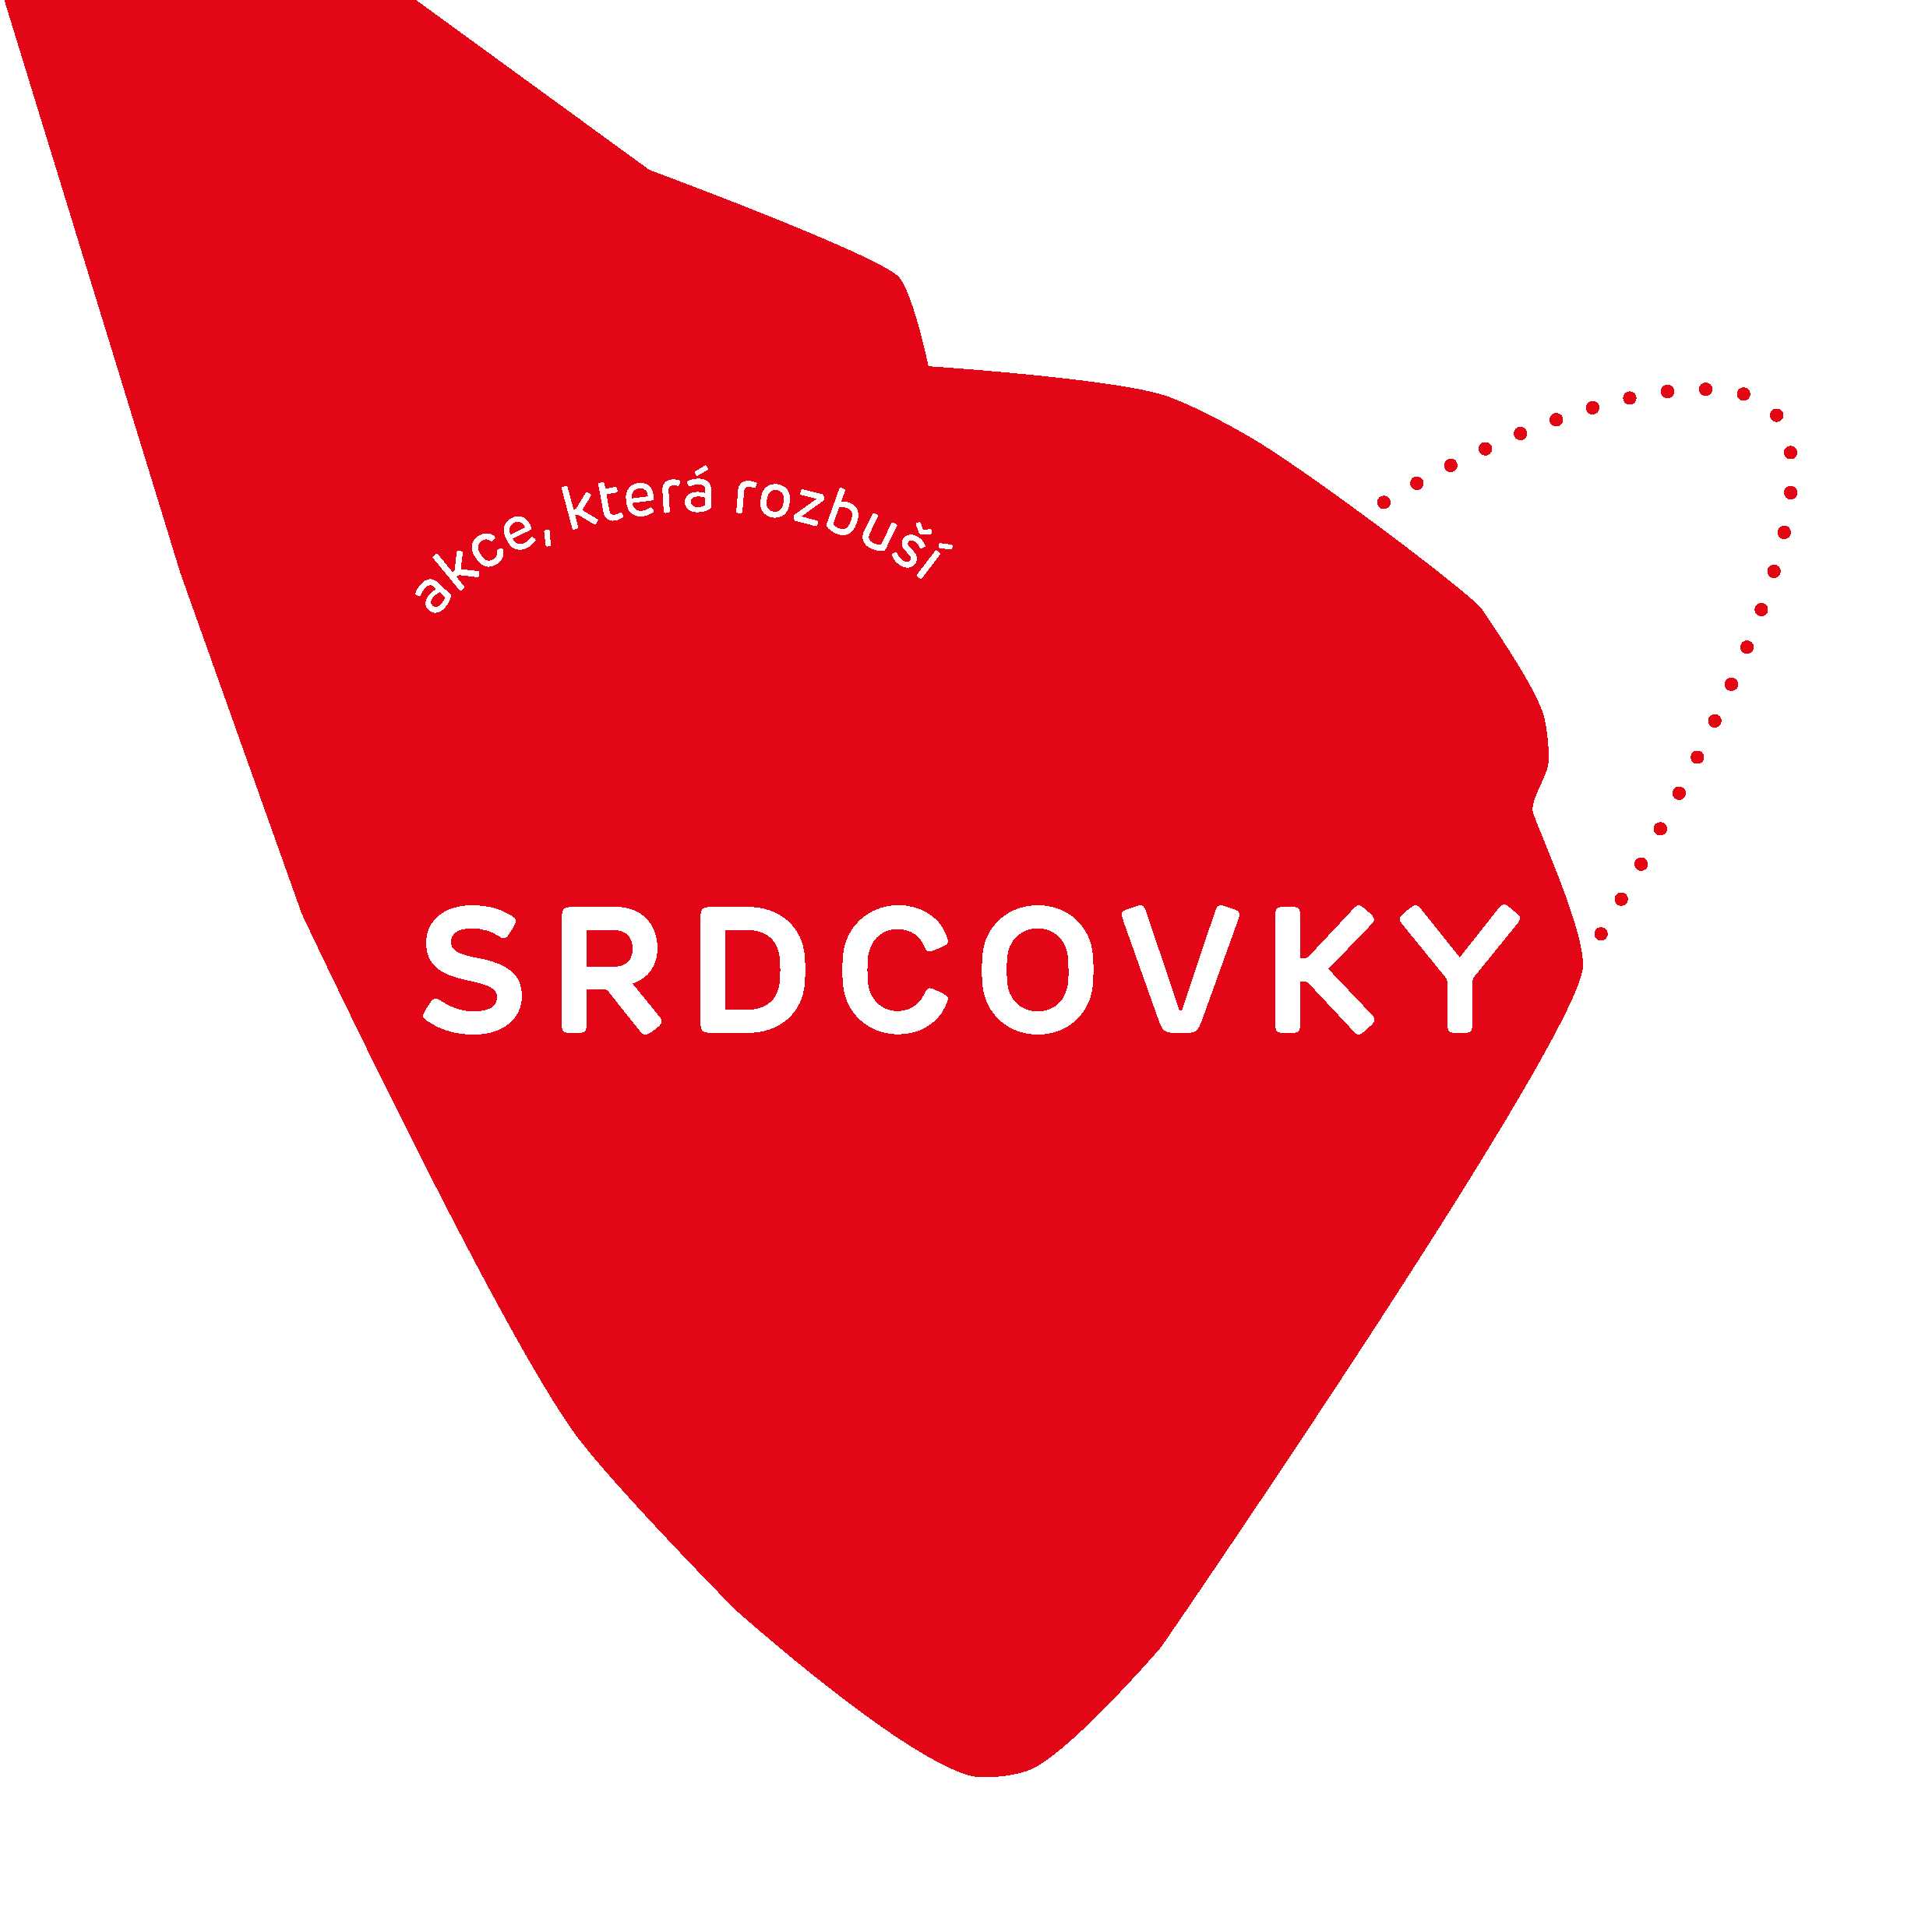 Logo srdcovky, červené srdce s textem Srdcovky, akce která rozbuší